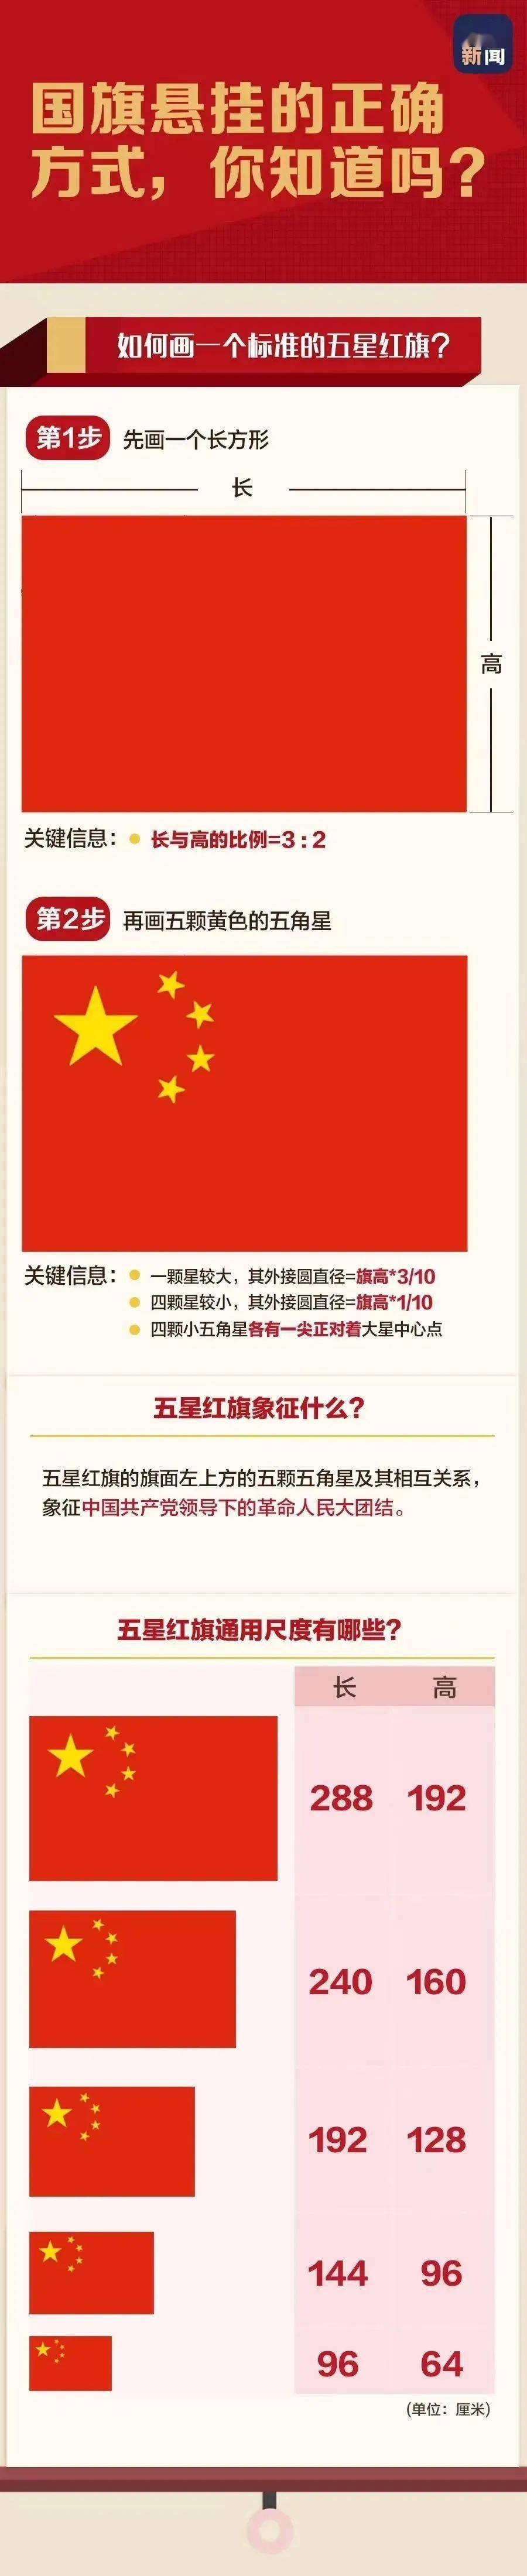 【法宣之窗】正确使用国旗,一起学习《中华人民共和国国旗法》